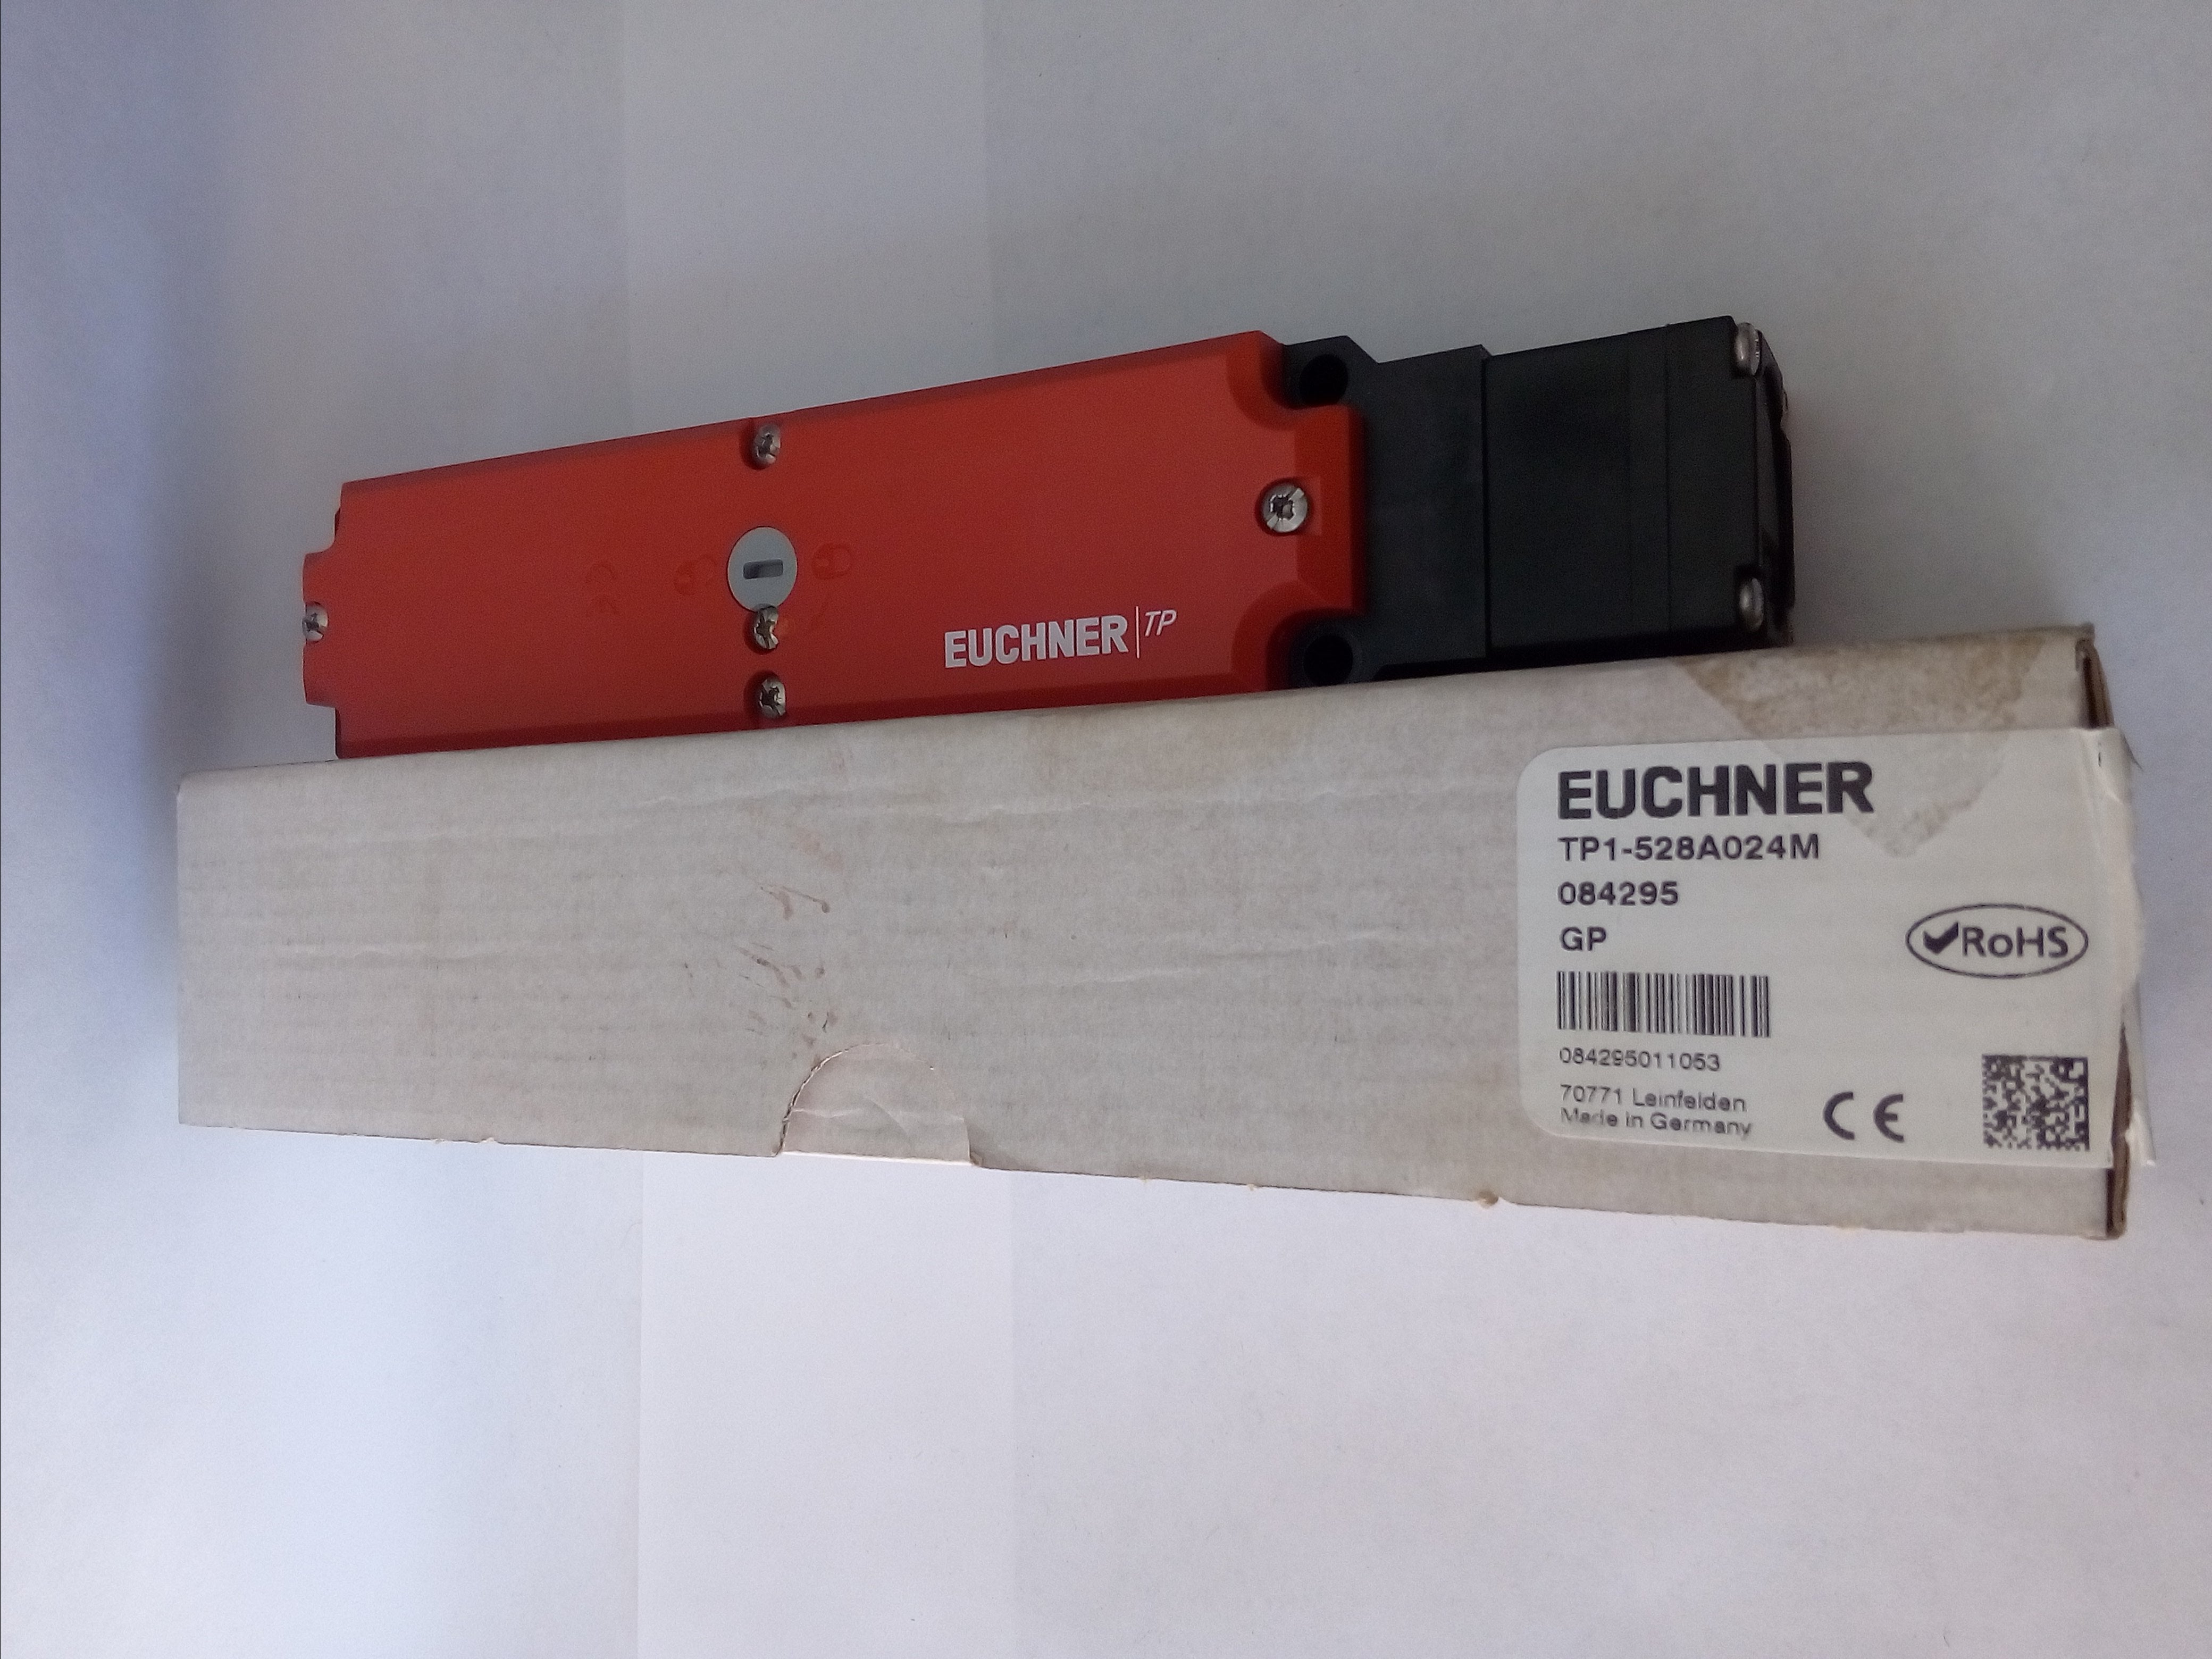 Interruptor de Seguridad Euchner TP1-528A024M